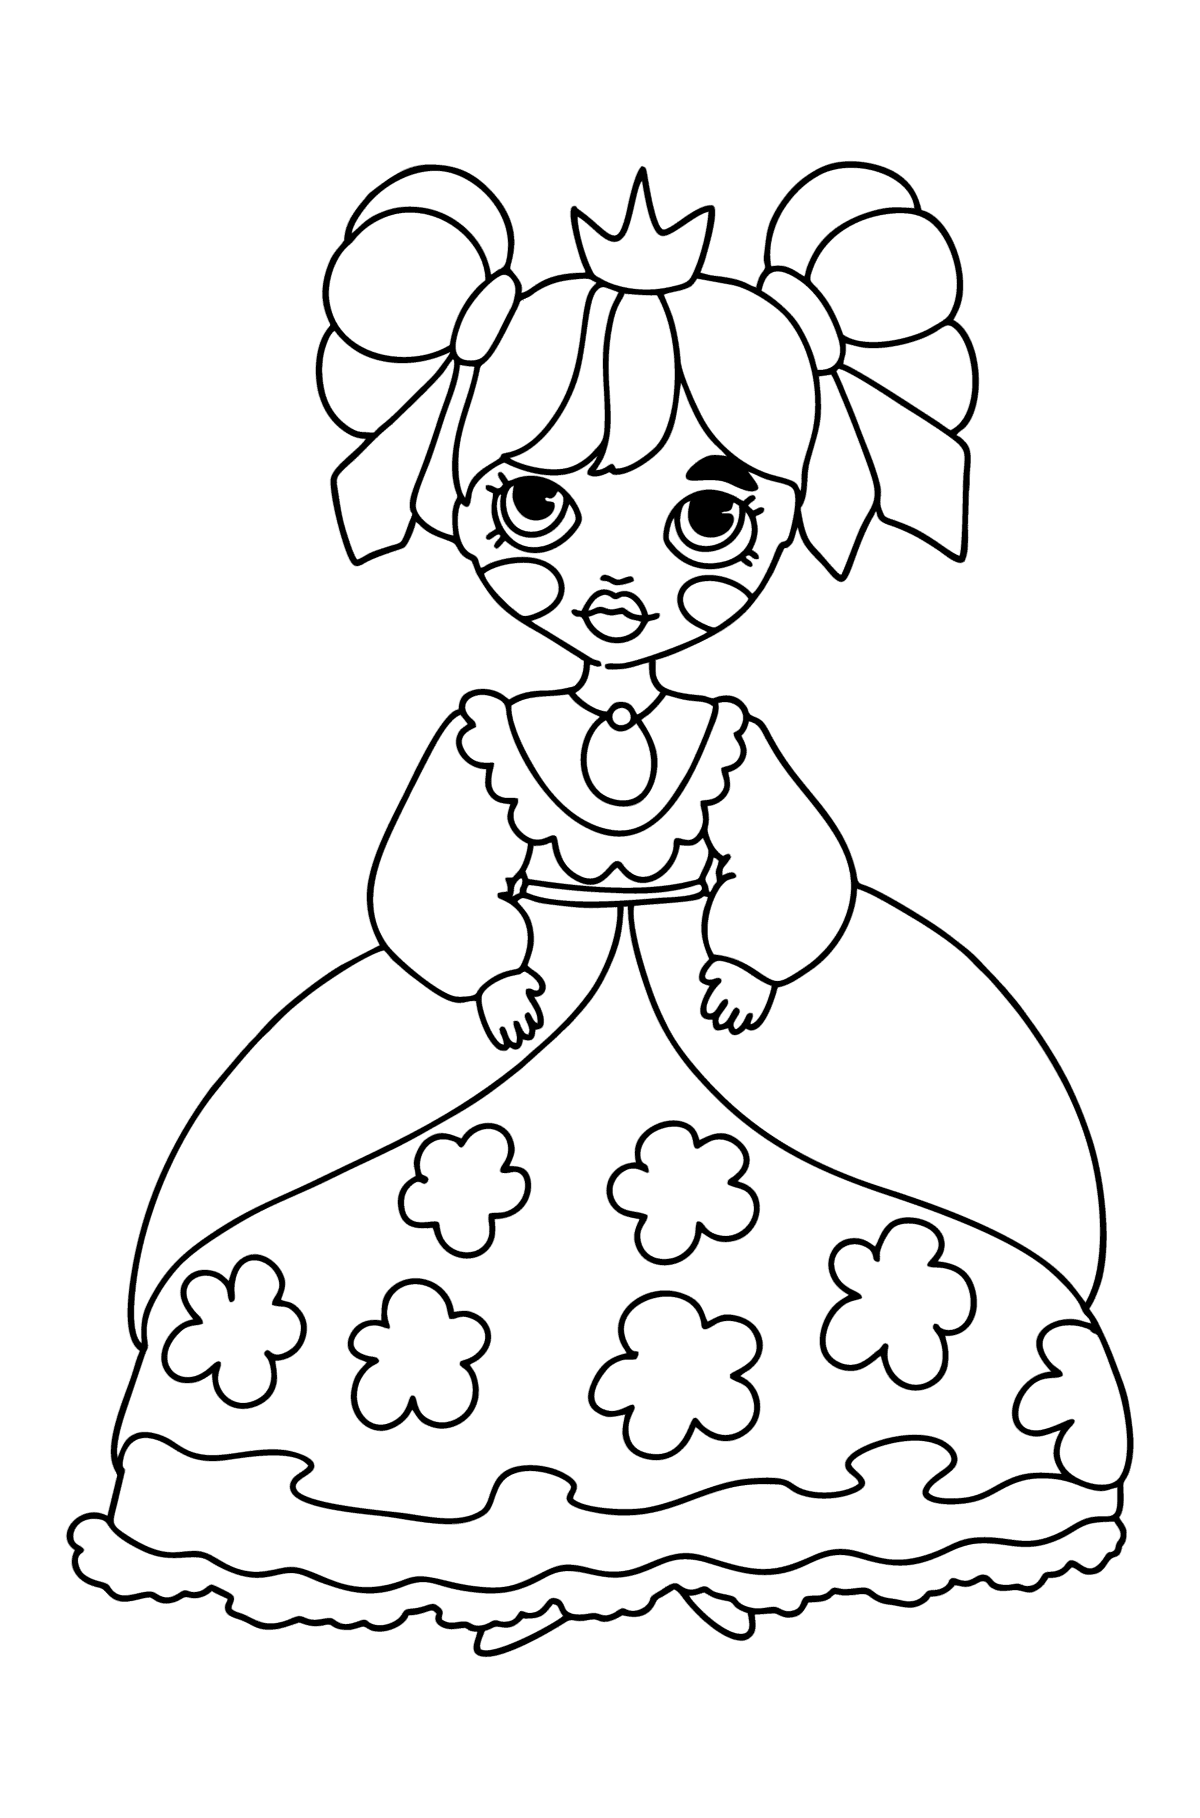 Раскраска Принцесса в пышном платье - Картинки для Детей